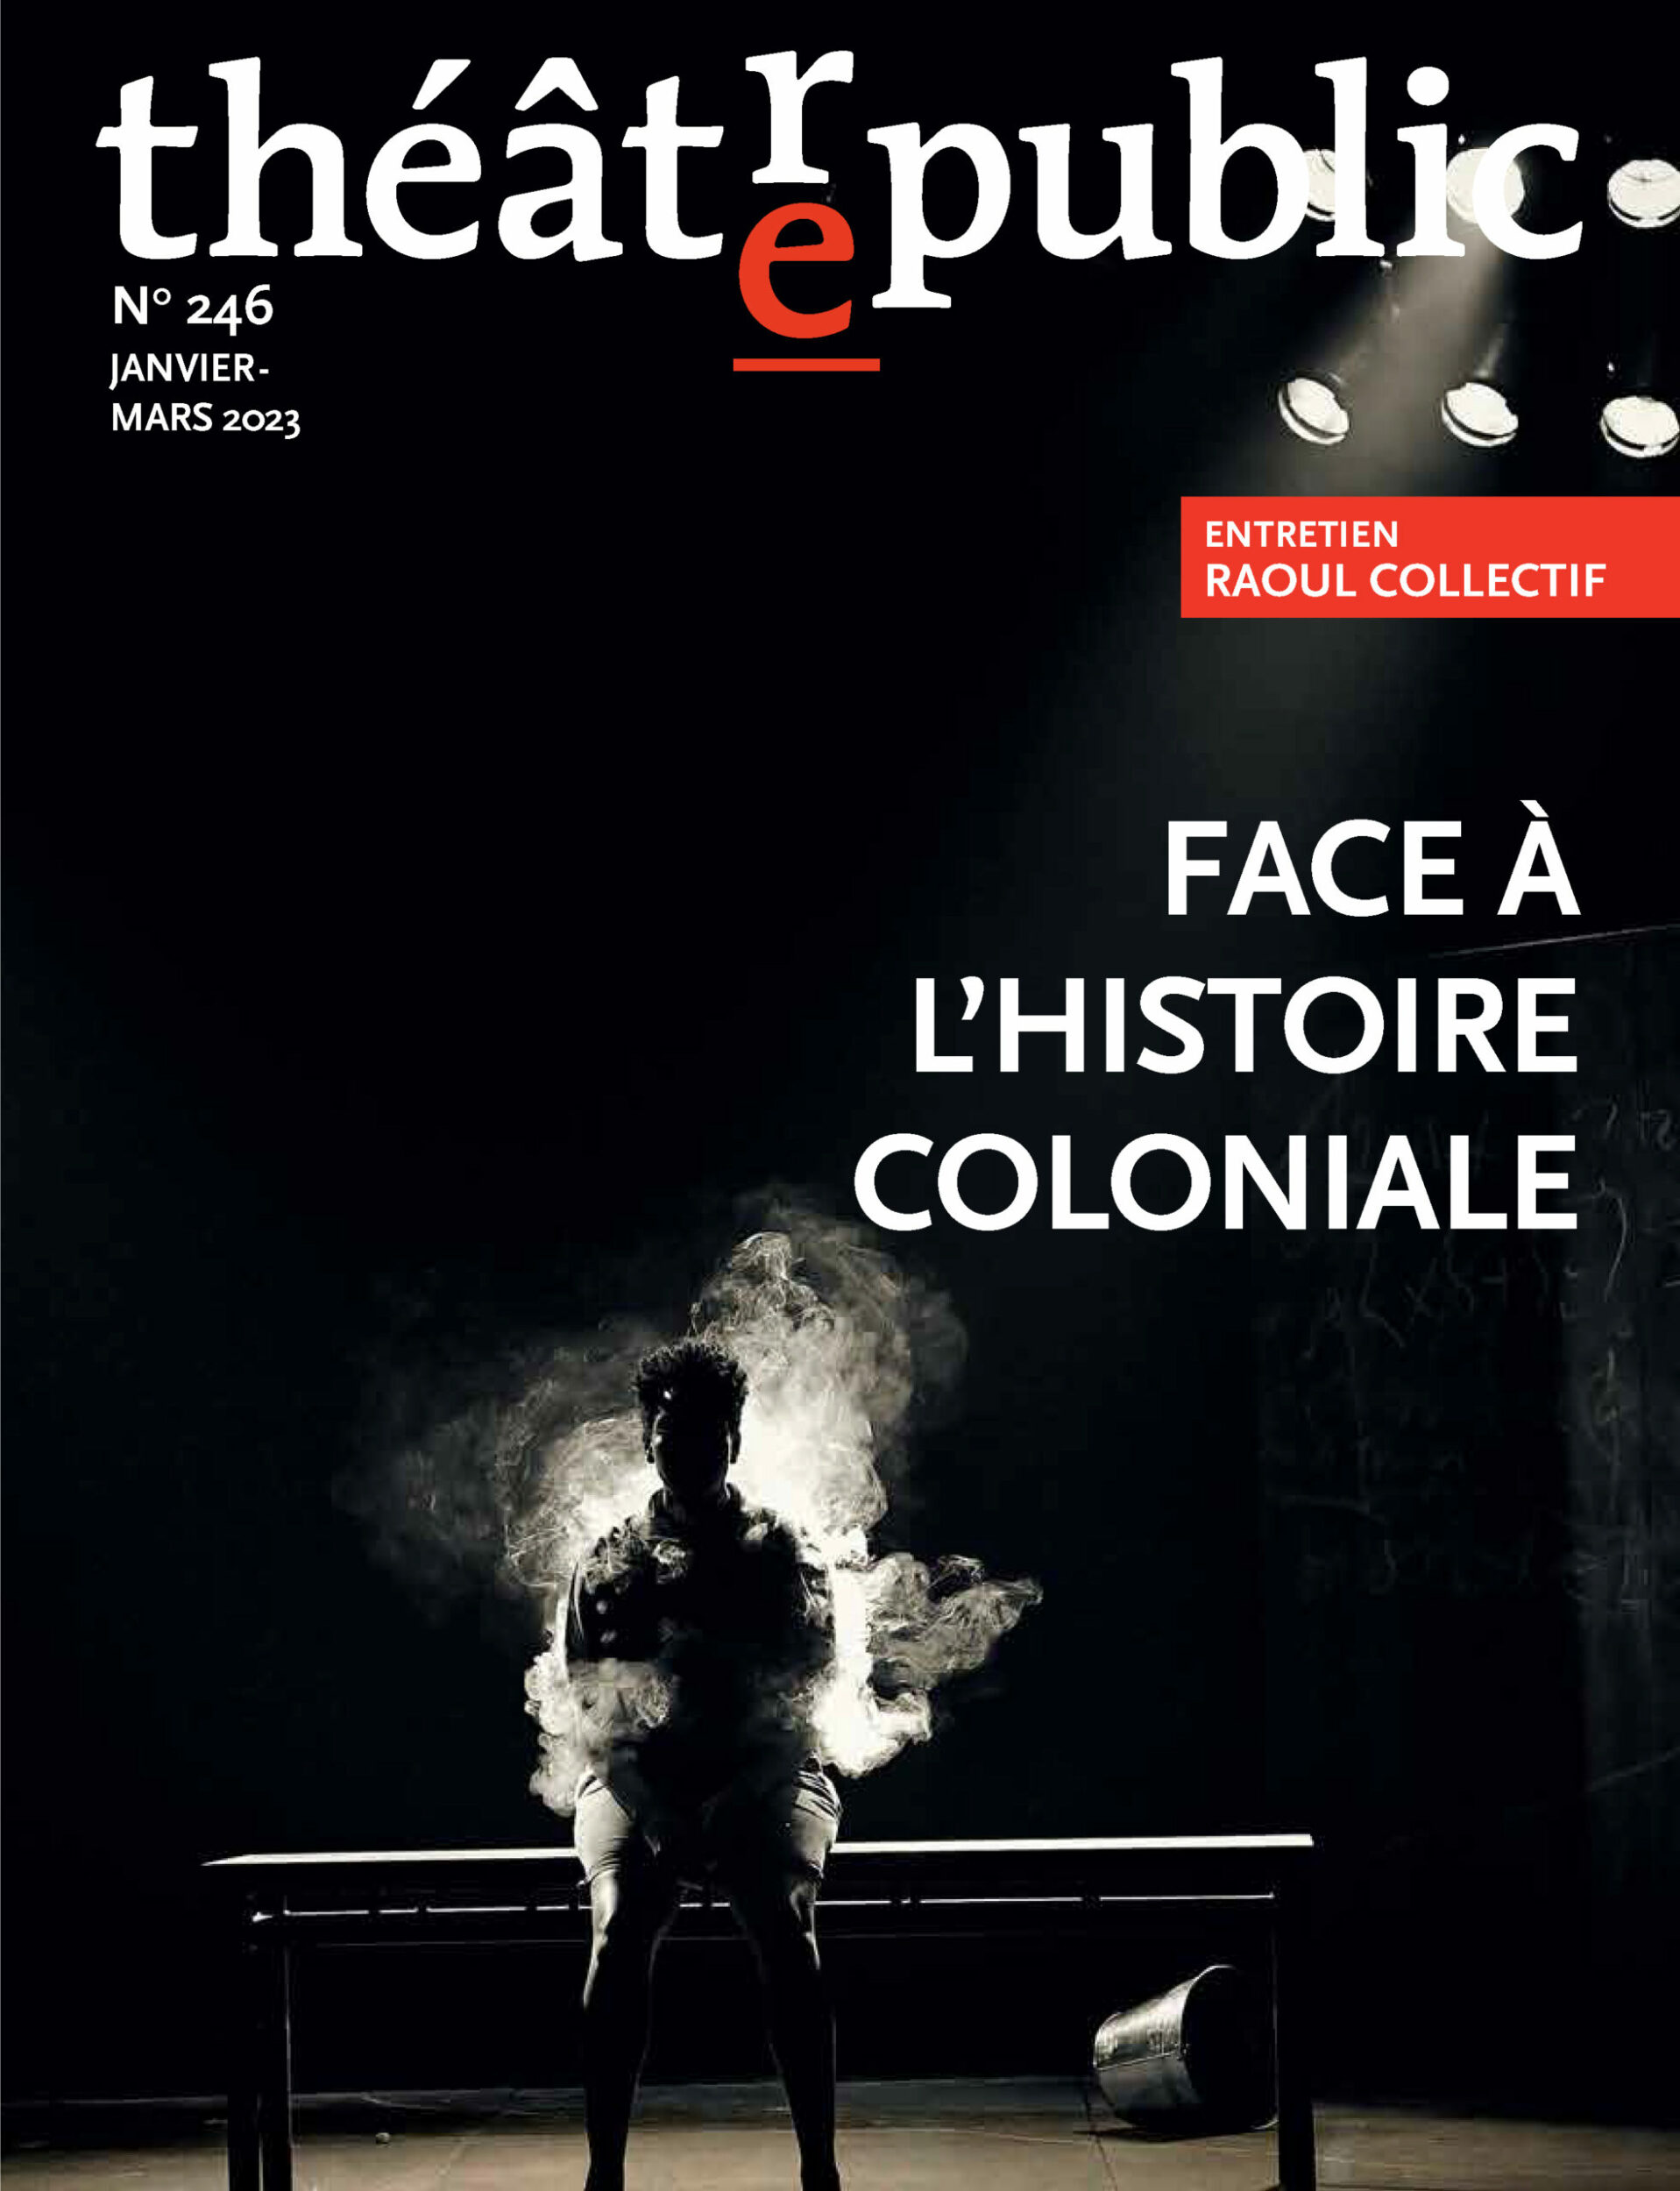 Face à l’histoire coloniale | Numéro 246 | Théâtre/Public